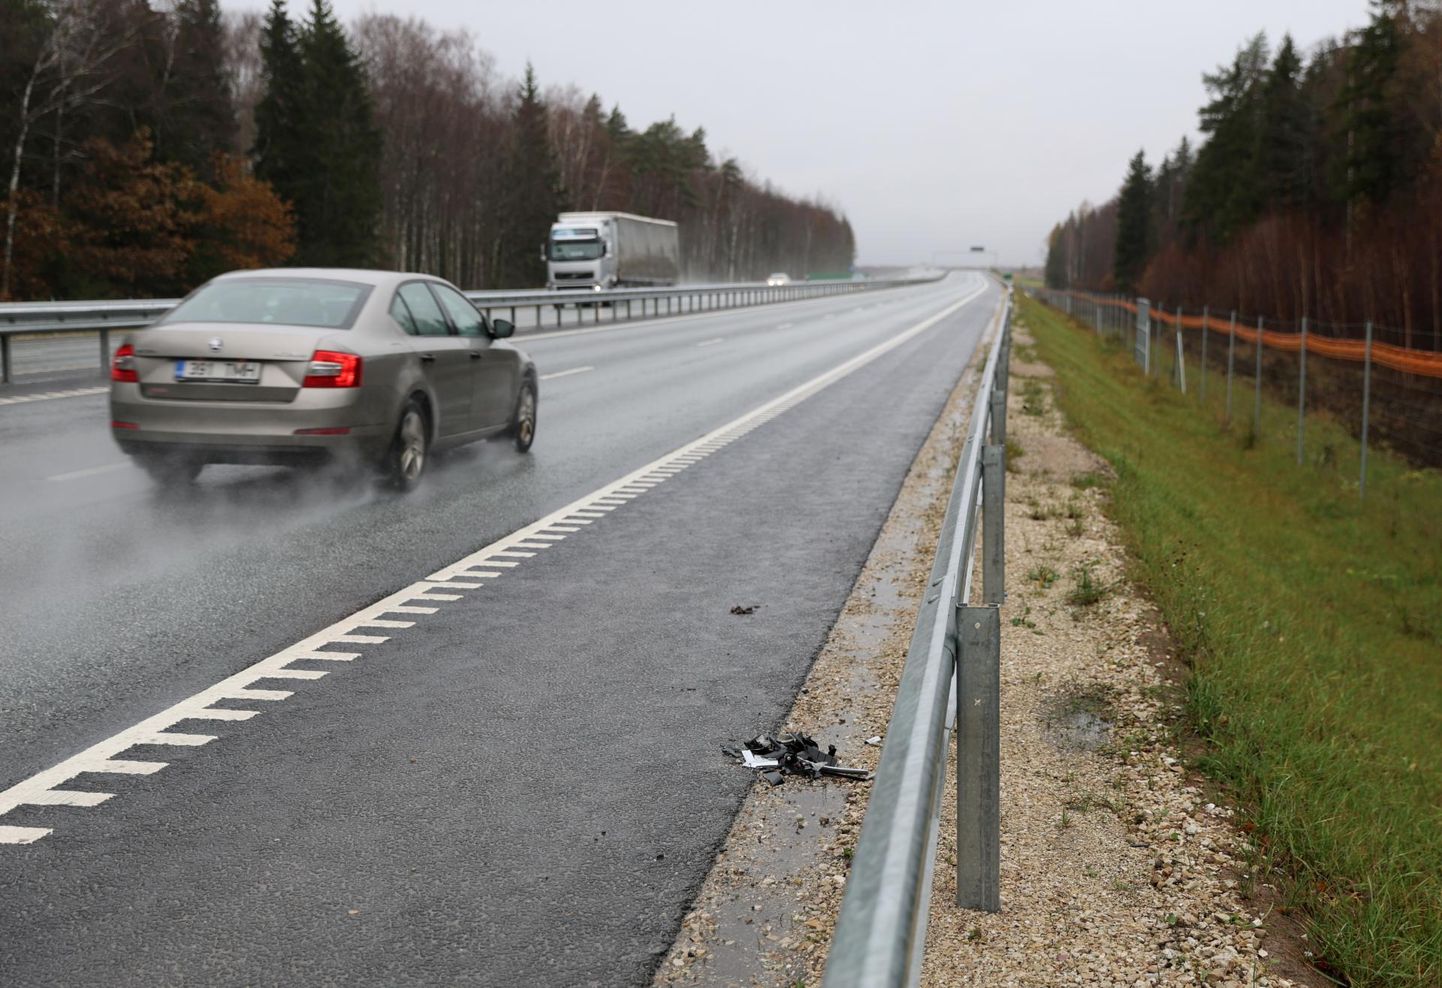 Õnnetus, kus hukkus 30-aastane Harjumaalt pärit mees, juhtus mullu 4. novembril Kardla külas Kärevere silla lähistel. Neljarajaline lõik on seal mõlemalt poolt raudpiirete ja loomataradega piiratud.